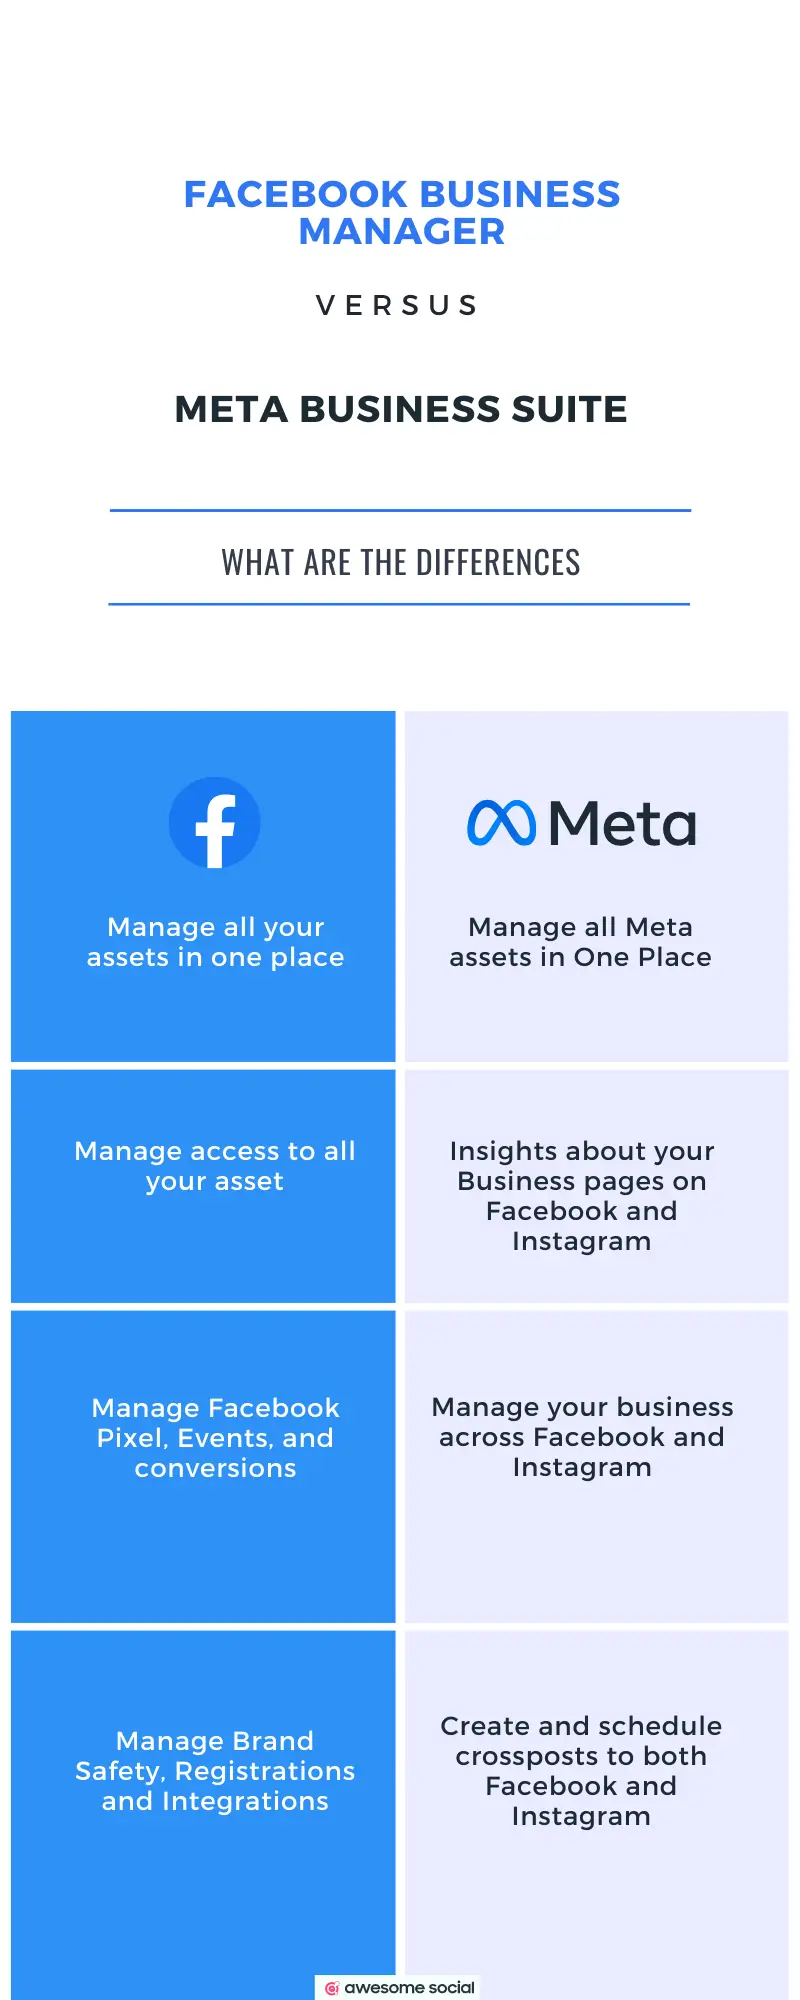 Meta Business Suite